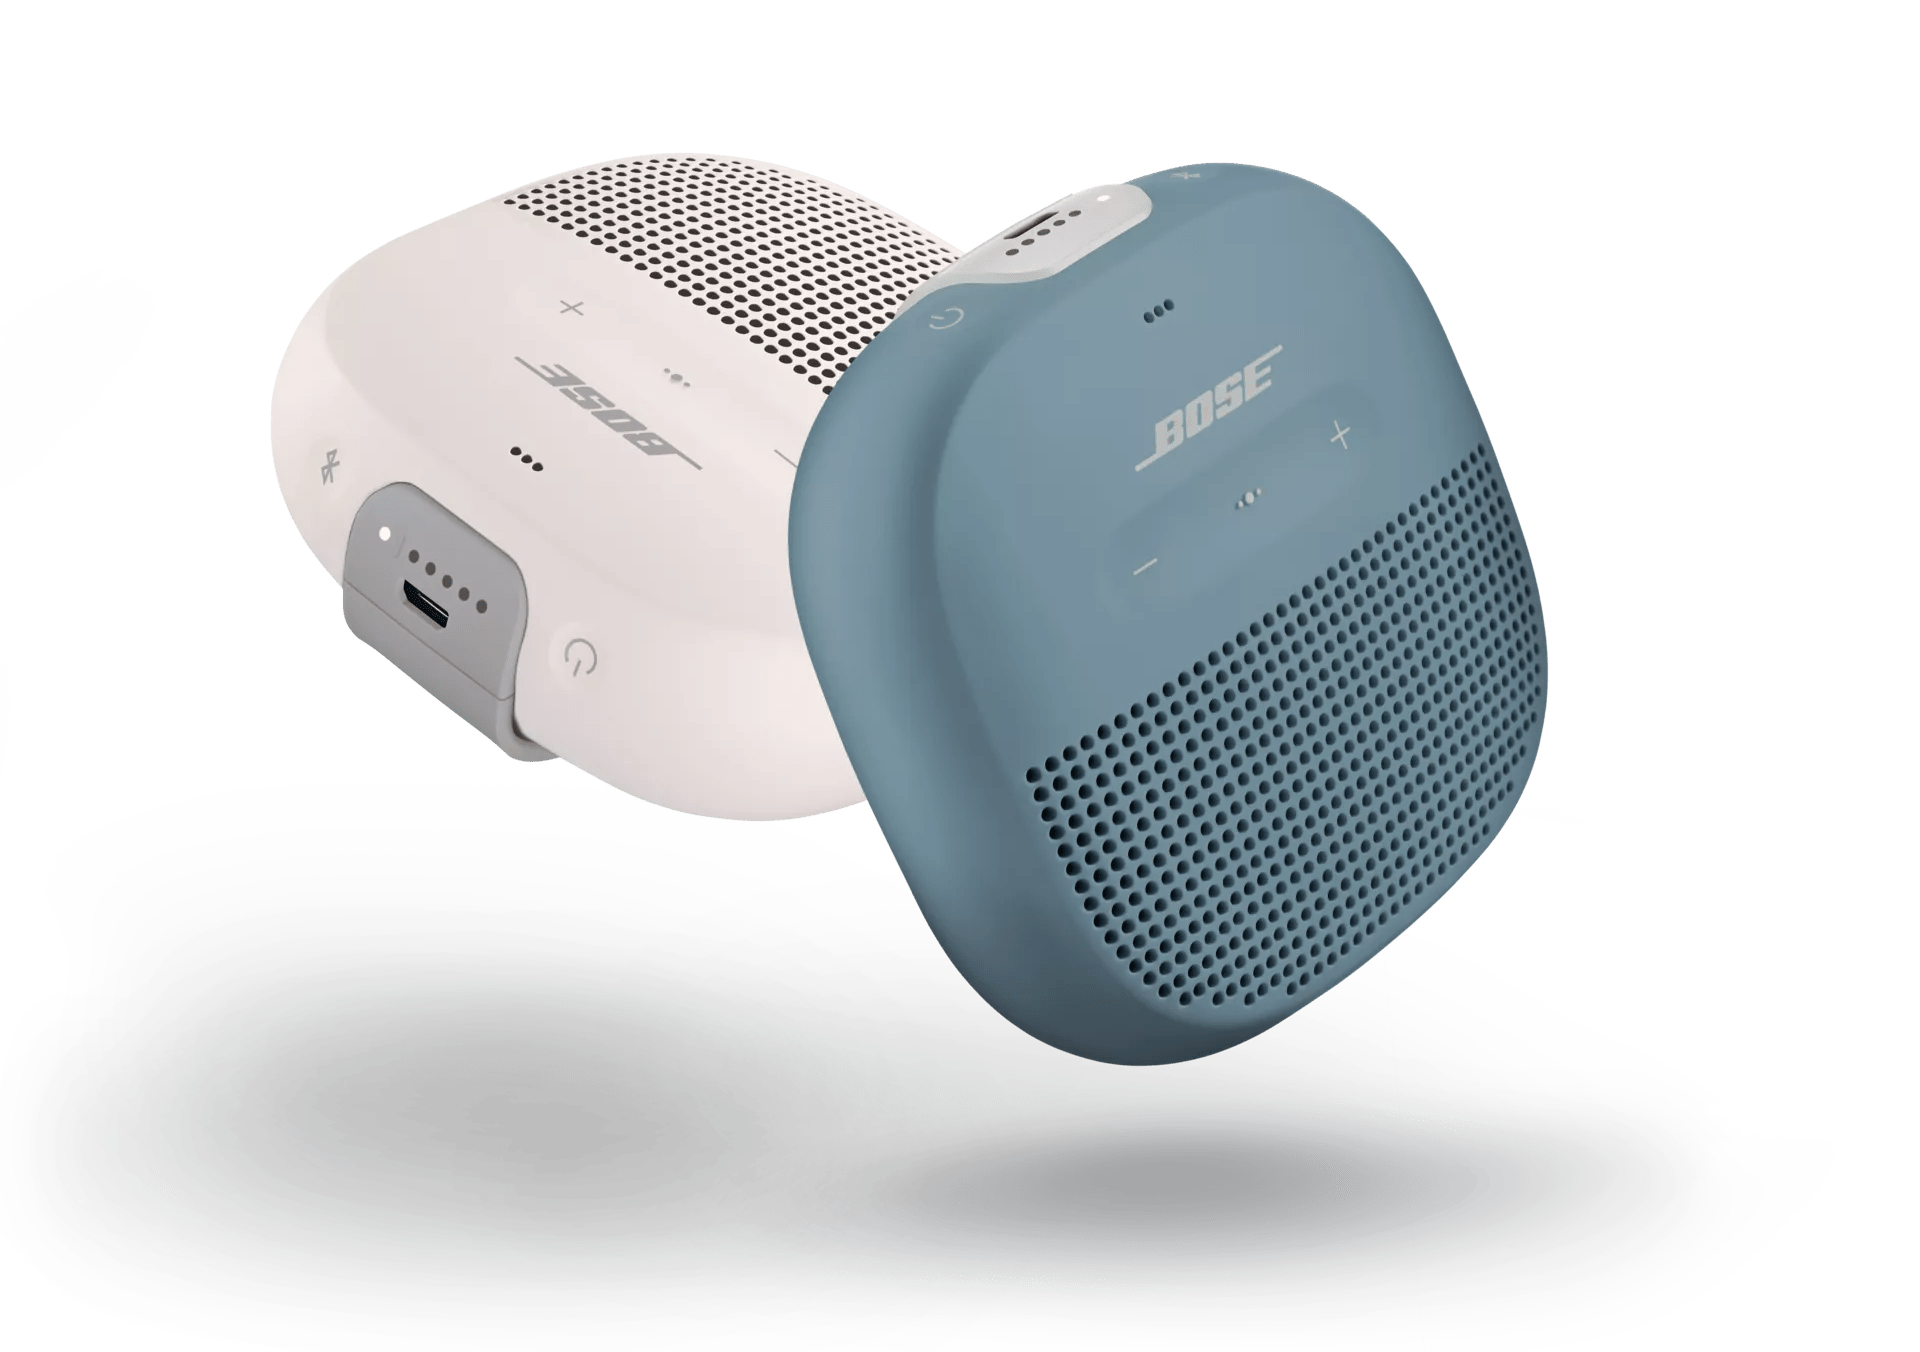 SoundLink Micro Waterproof Bluetooth Speaker Bose